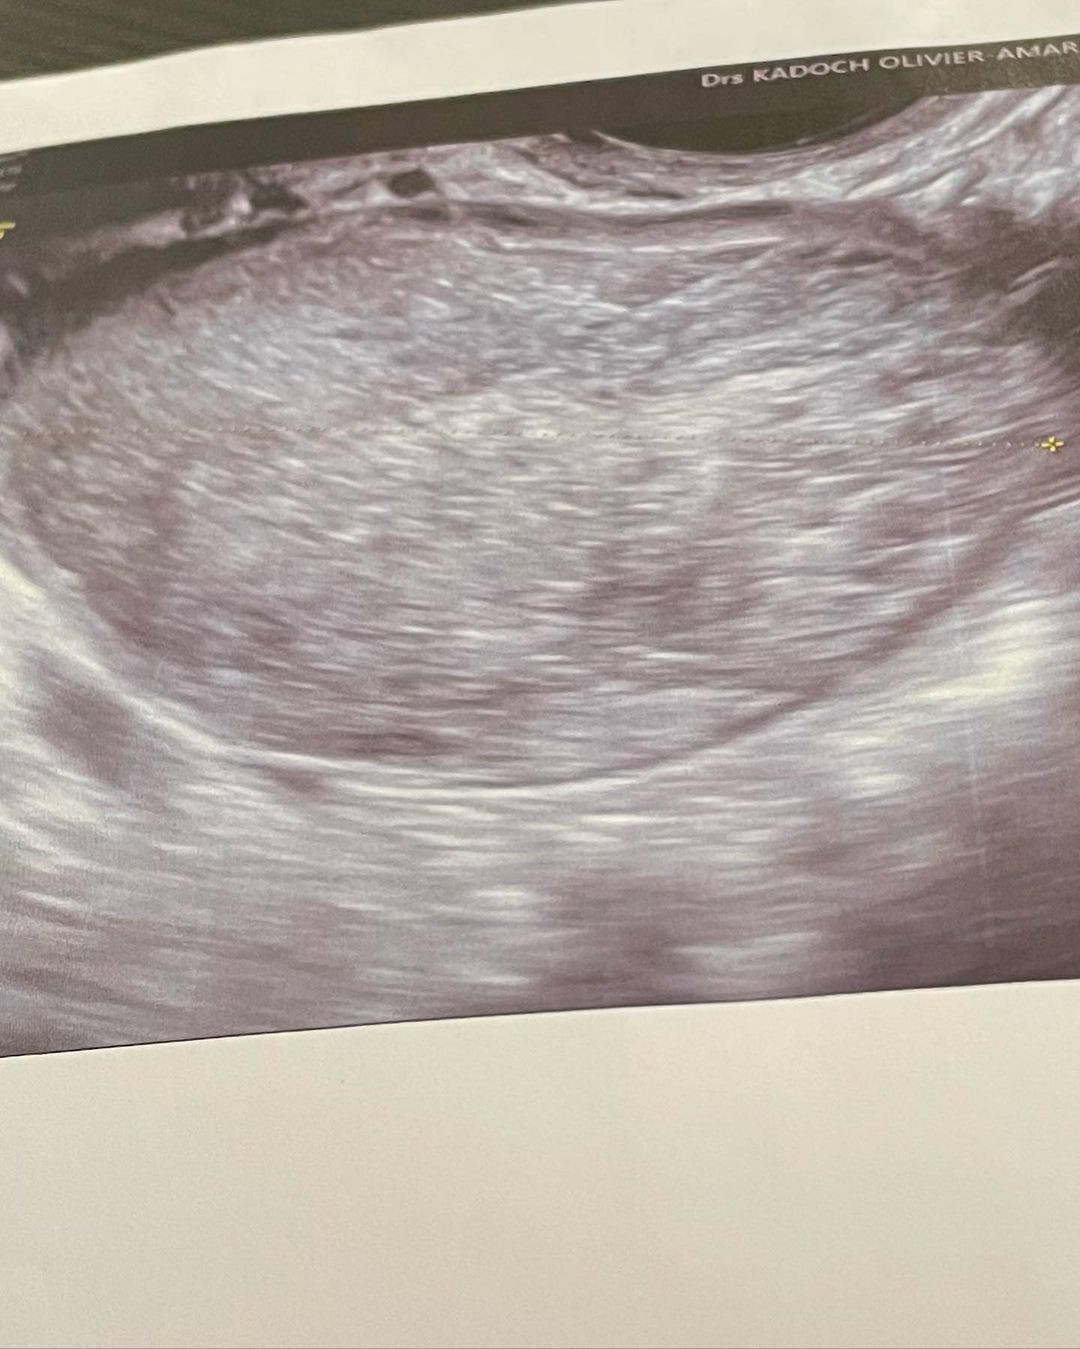 Thylane Blondeau undergoes surgery (Image: Engage/Instagram)